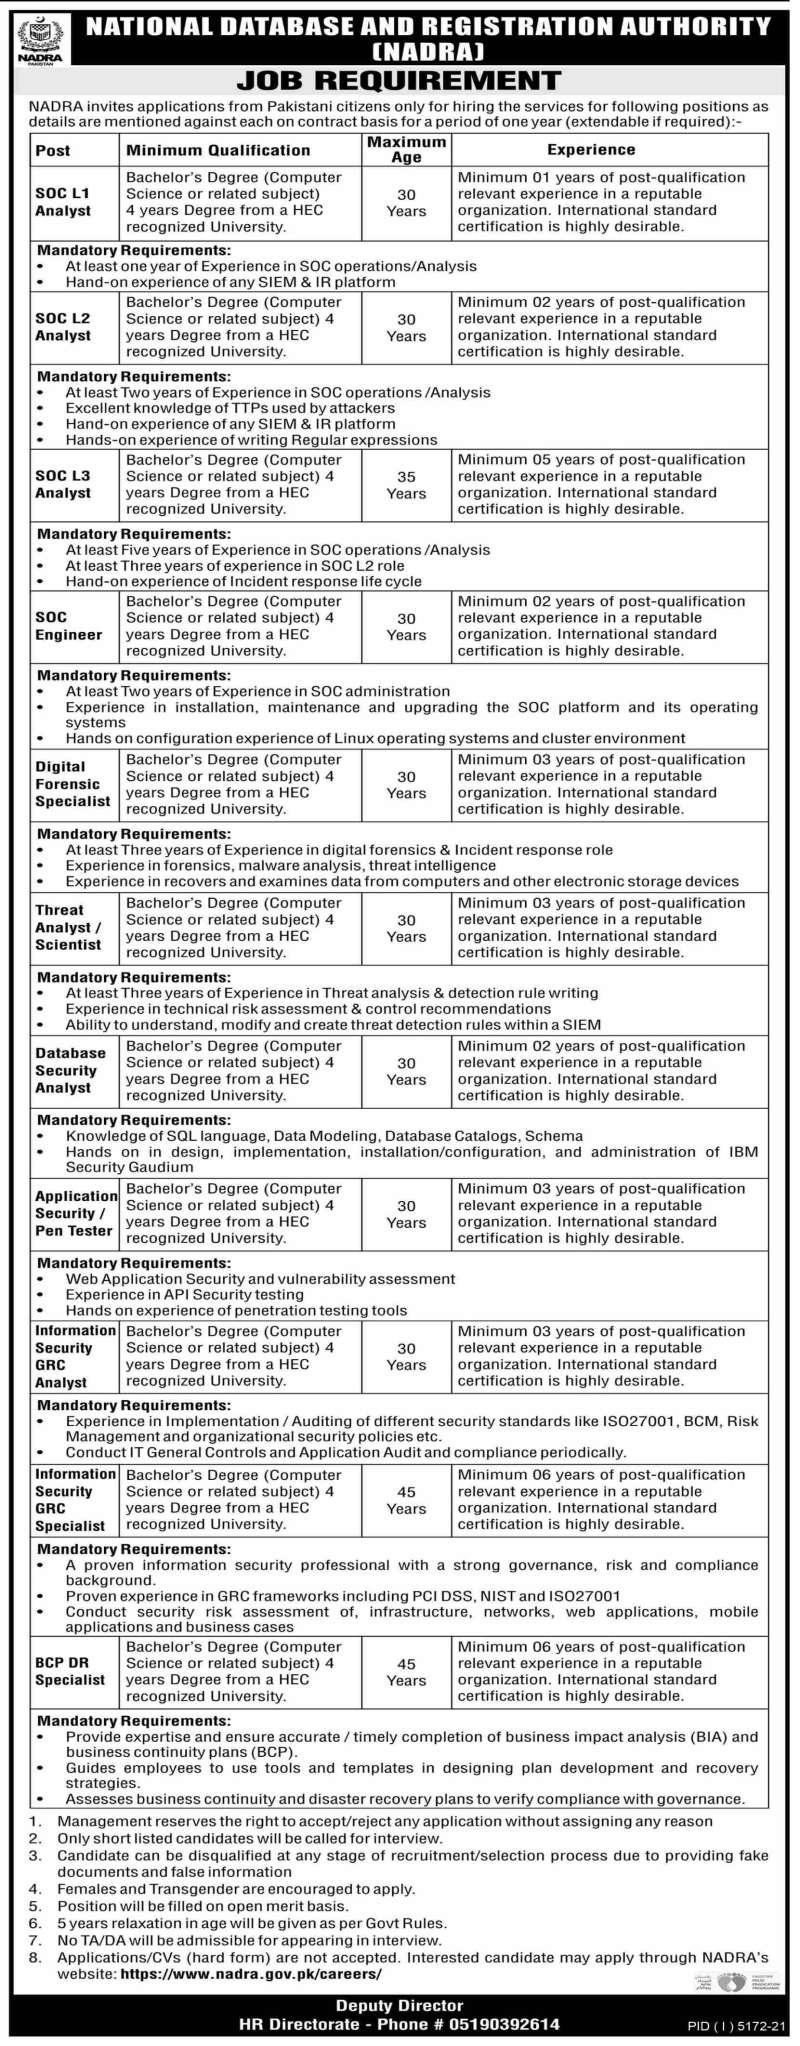 NADRA Islamabad Jobs 2022